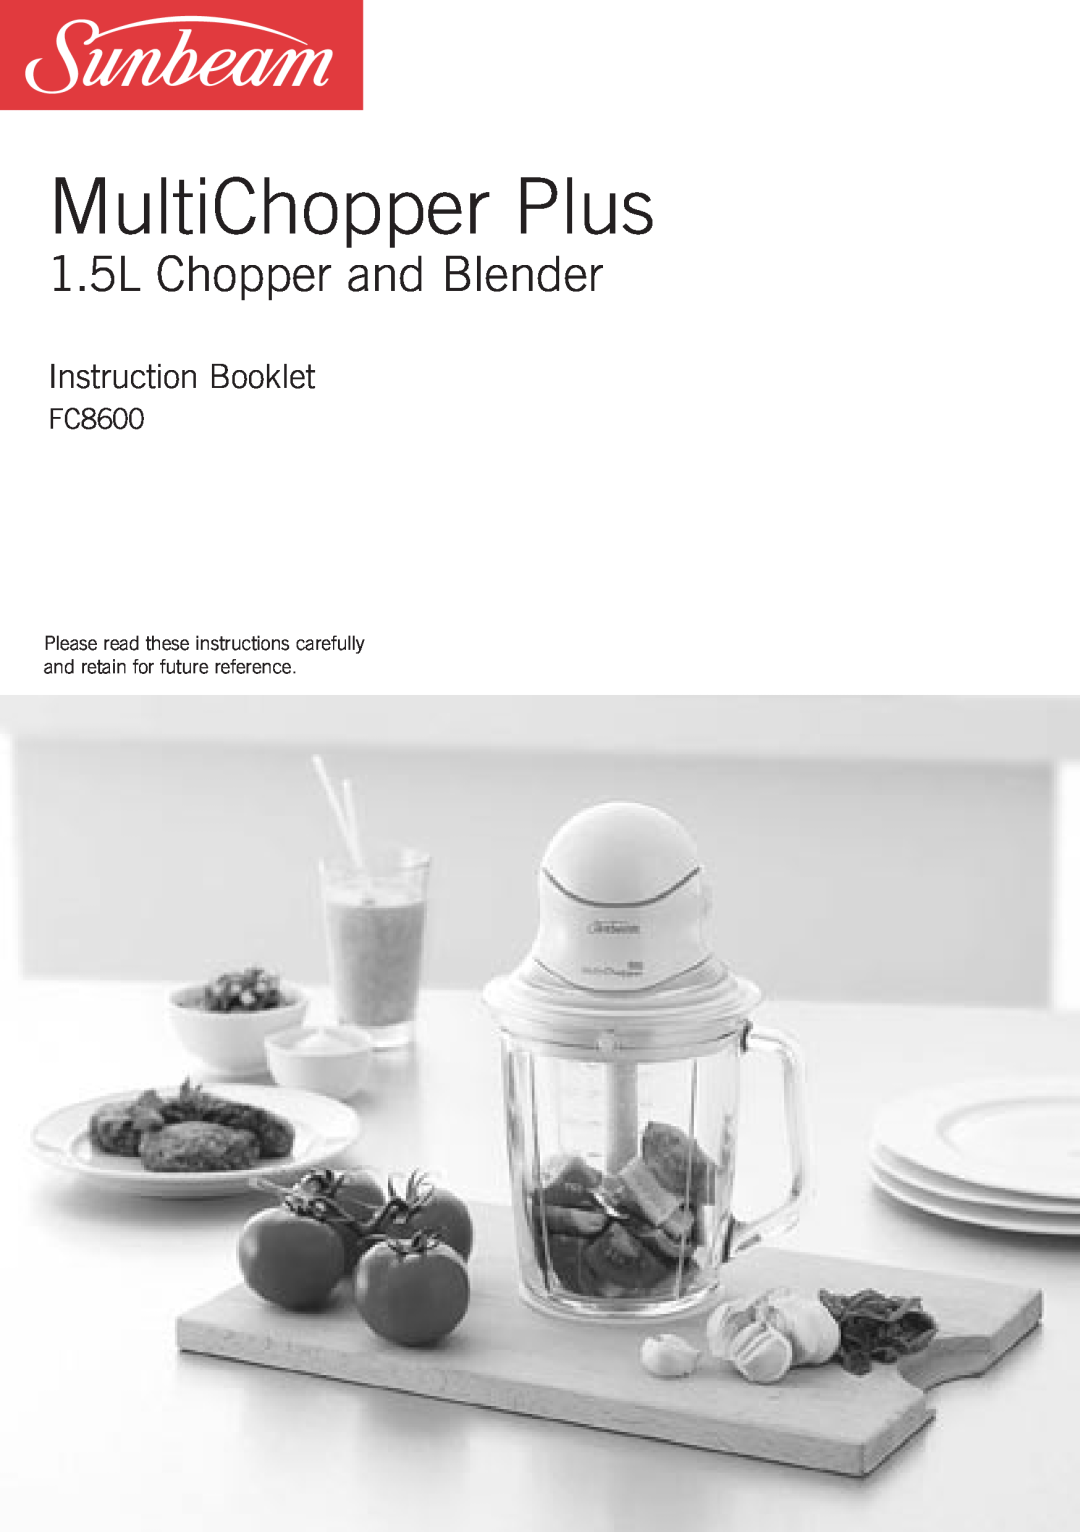 Sunbeam FC8600 manual MultiChopper Plus, 1.5L Chopper and Blender, Instruction Booklet 